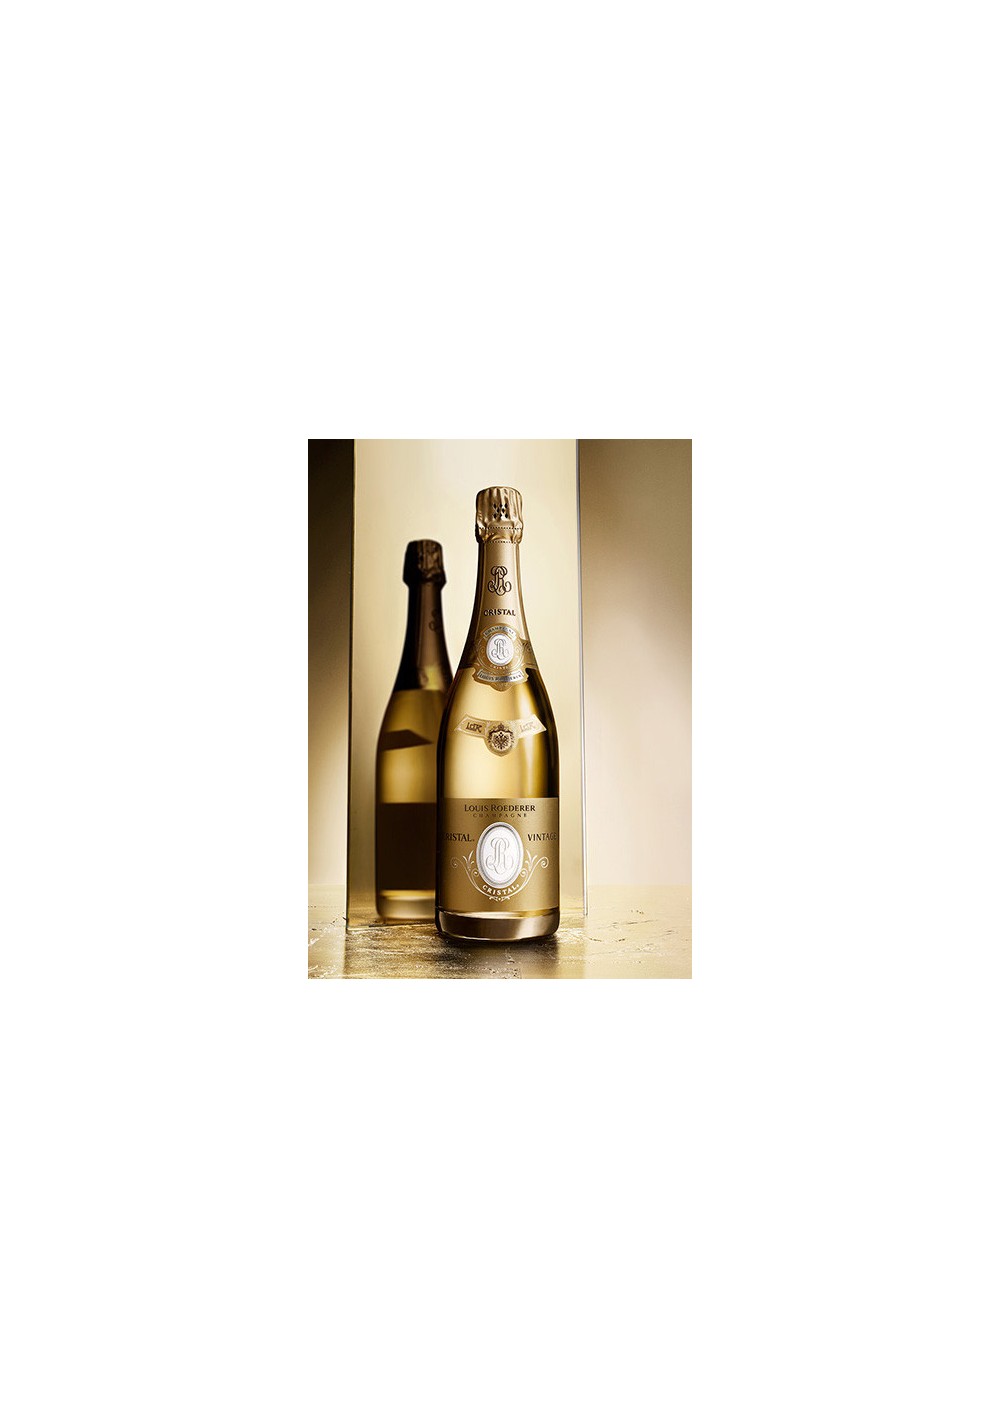 Champagne Cristal Roederer 2006 3 liters